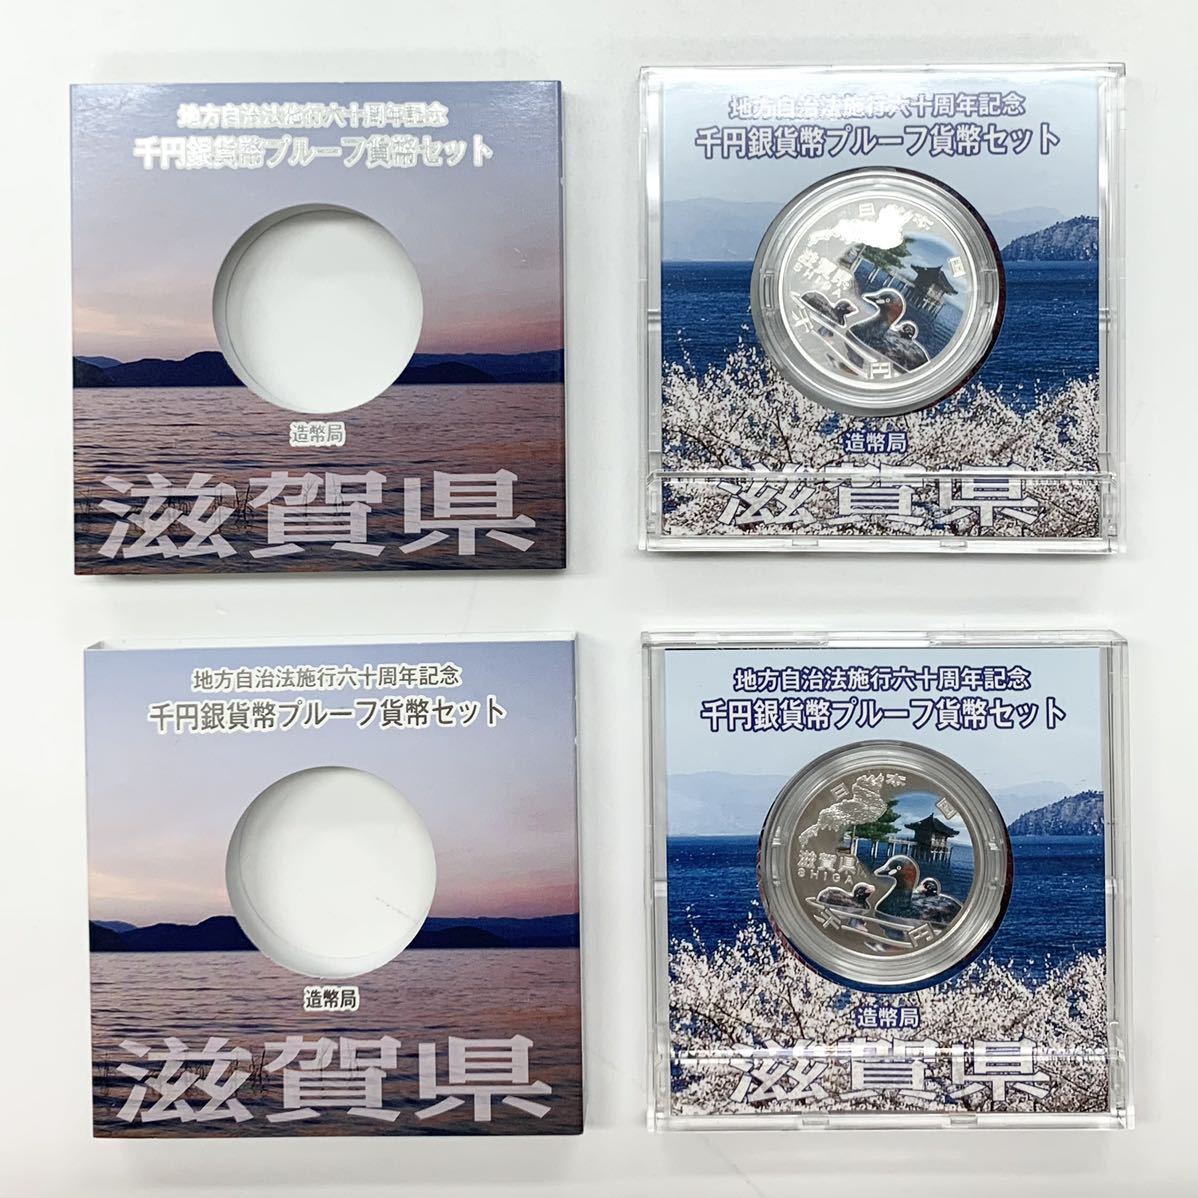 滋賀県 地方自治法施行六十周年記念 千円銀貨 プルーフ貨幣セット 2枚 